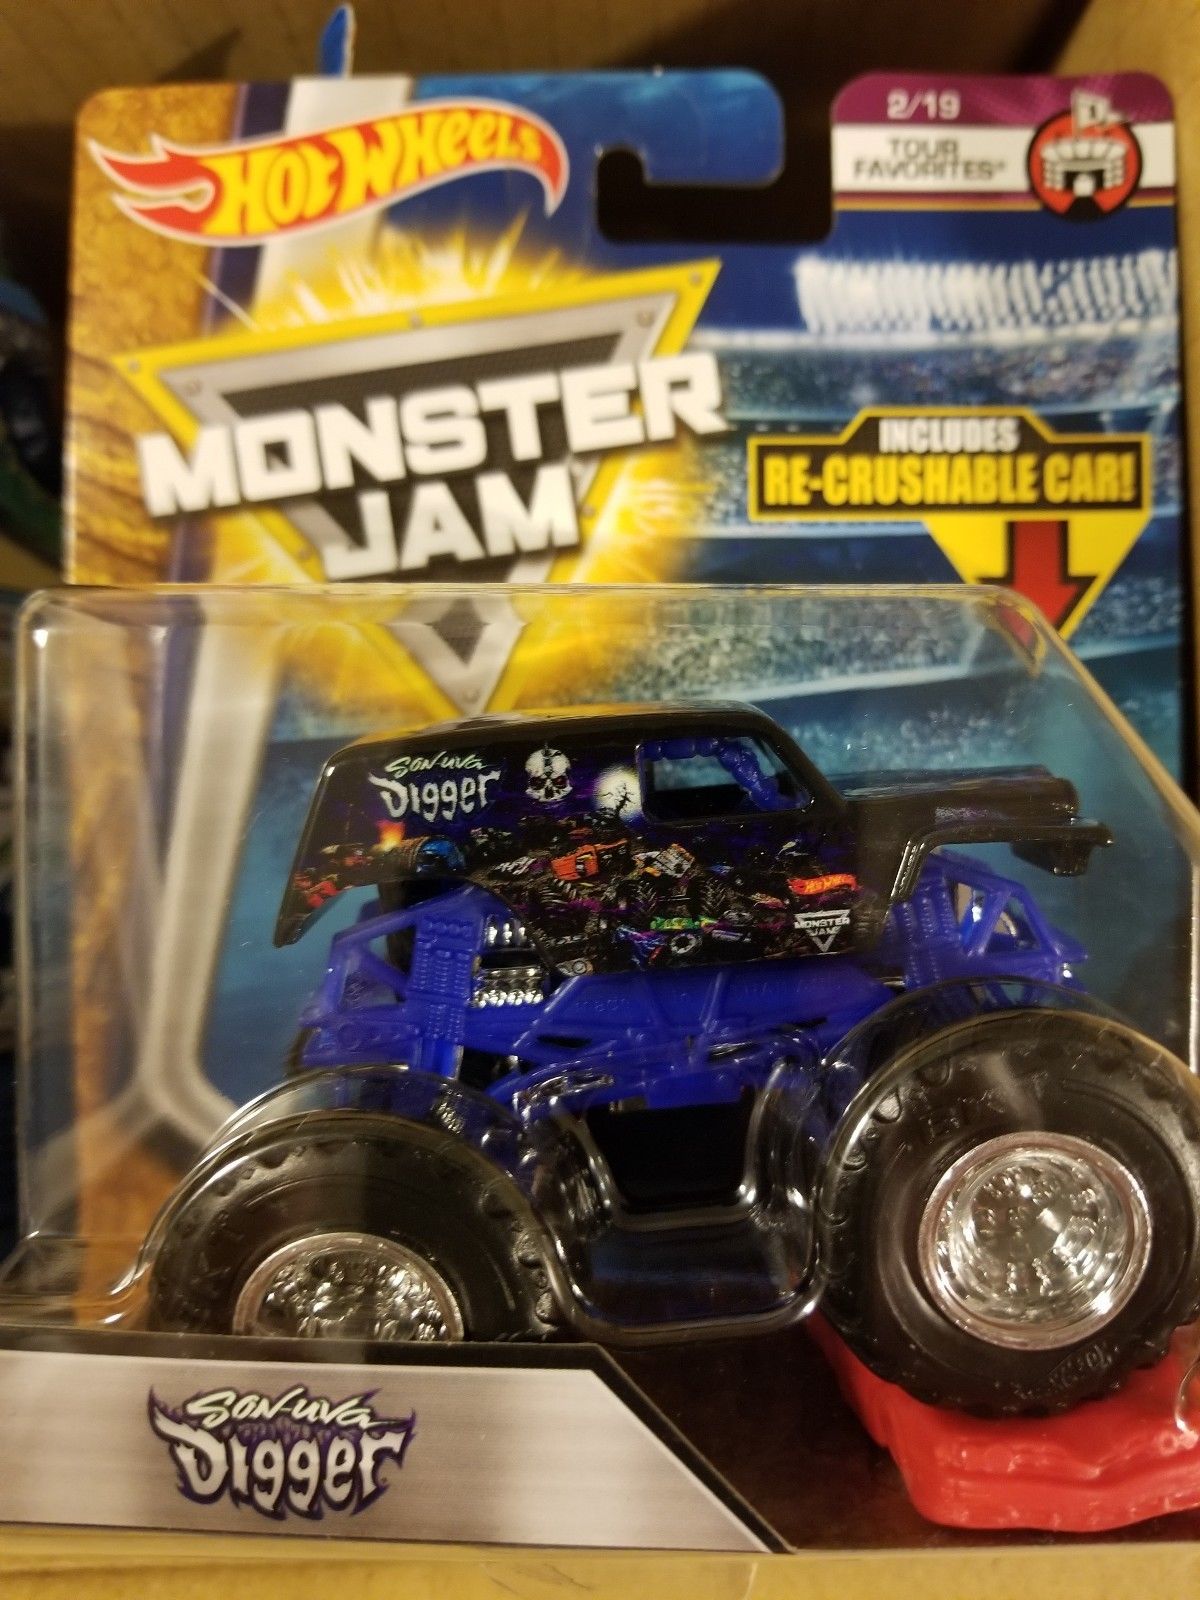 hot wheels monster jam 2018